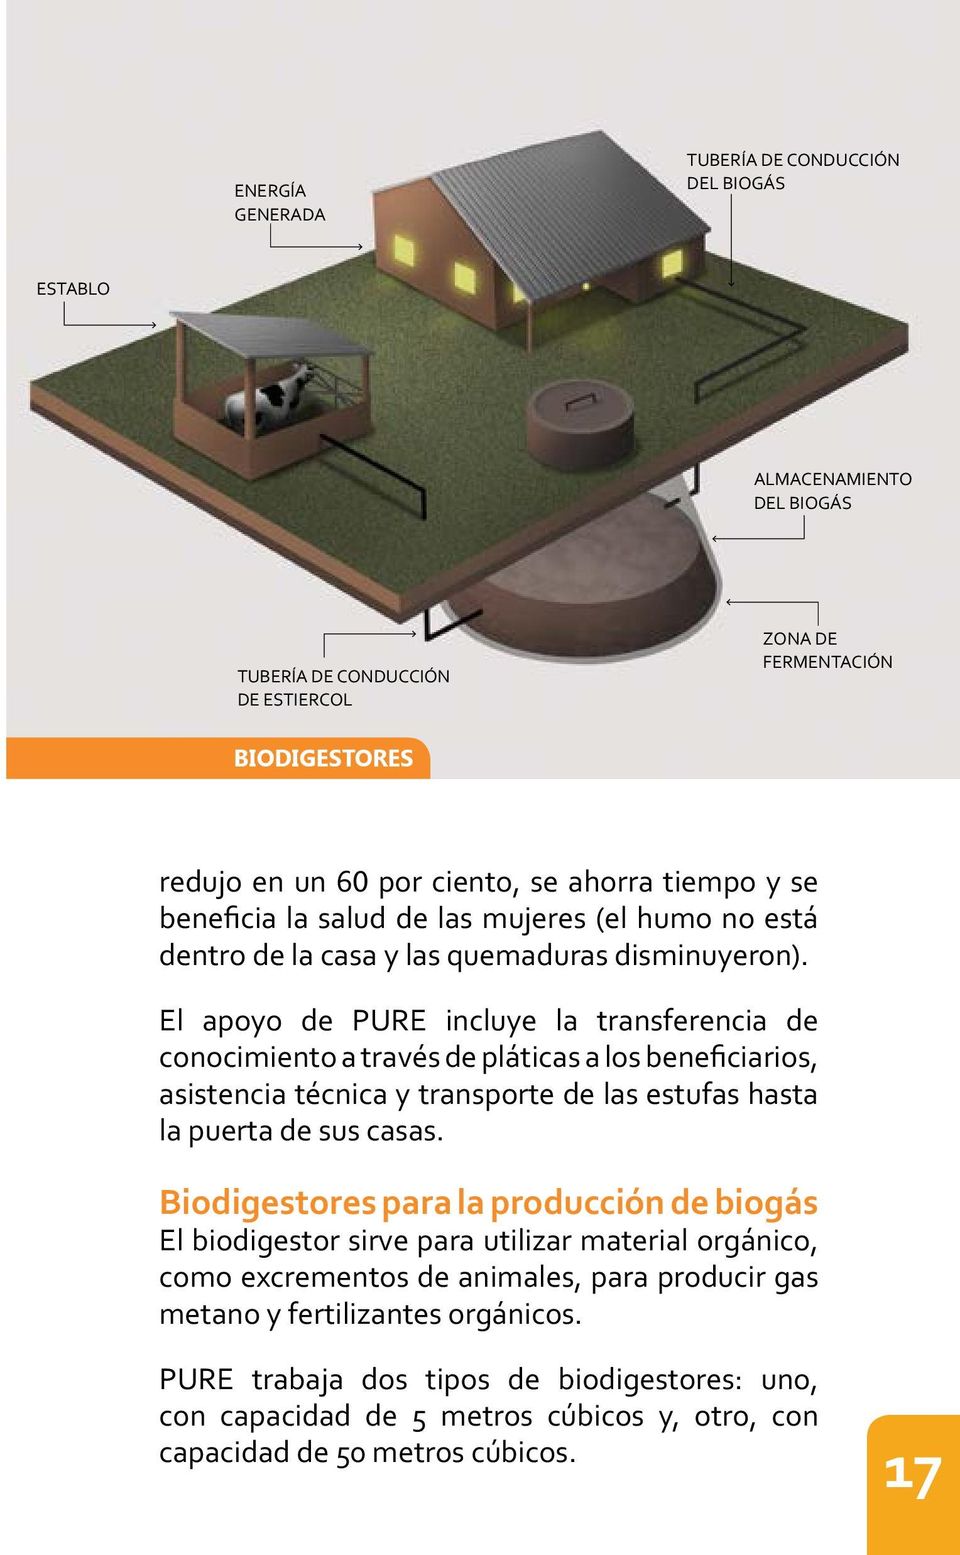 Biodigestores para la producción de biogás como excrementos de animales, para producir